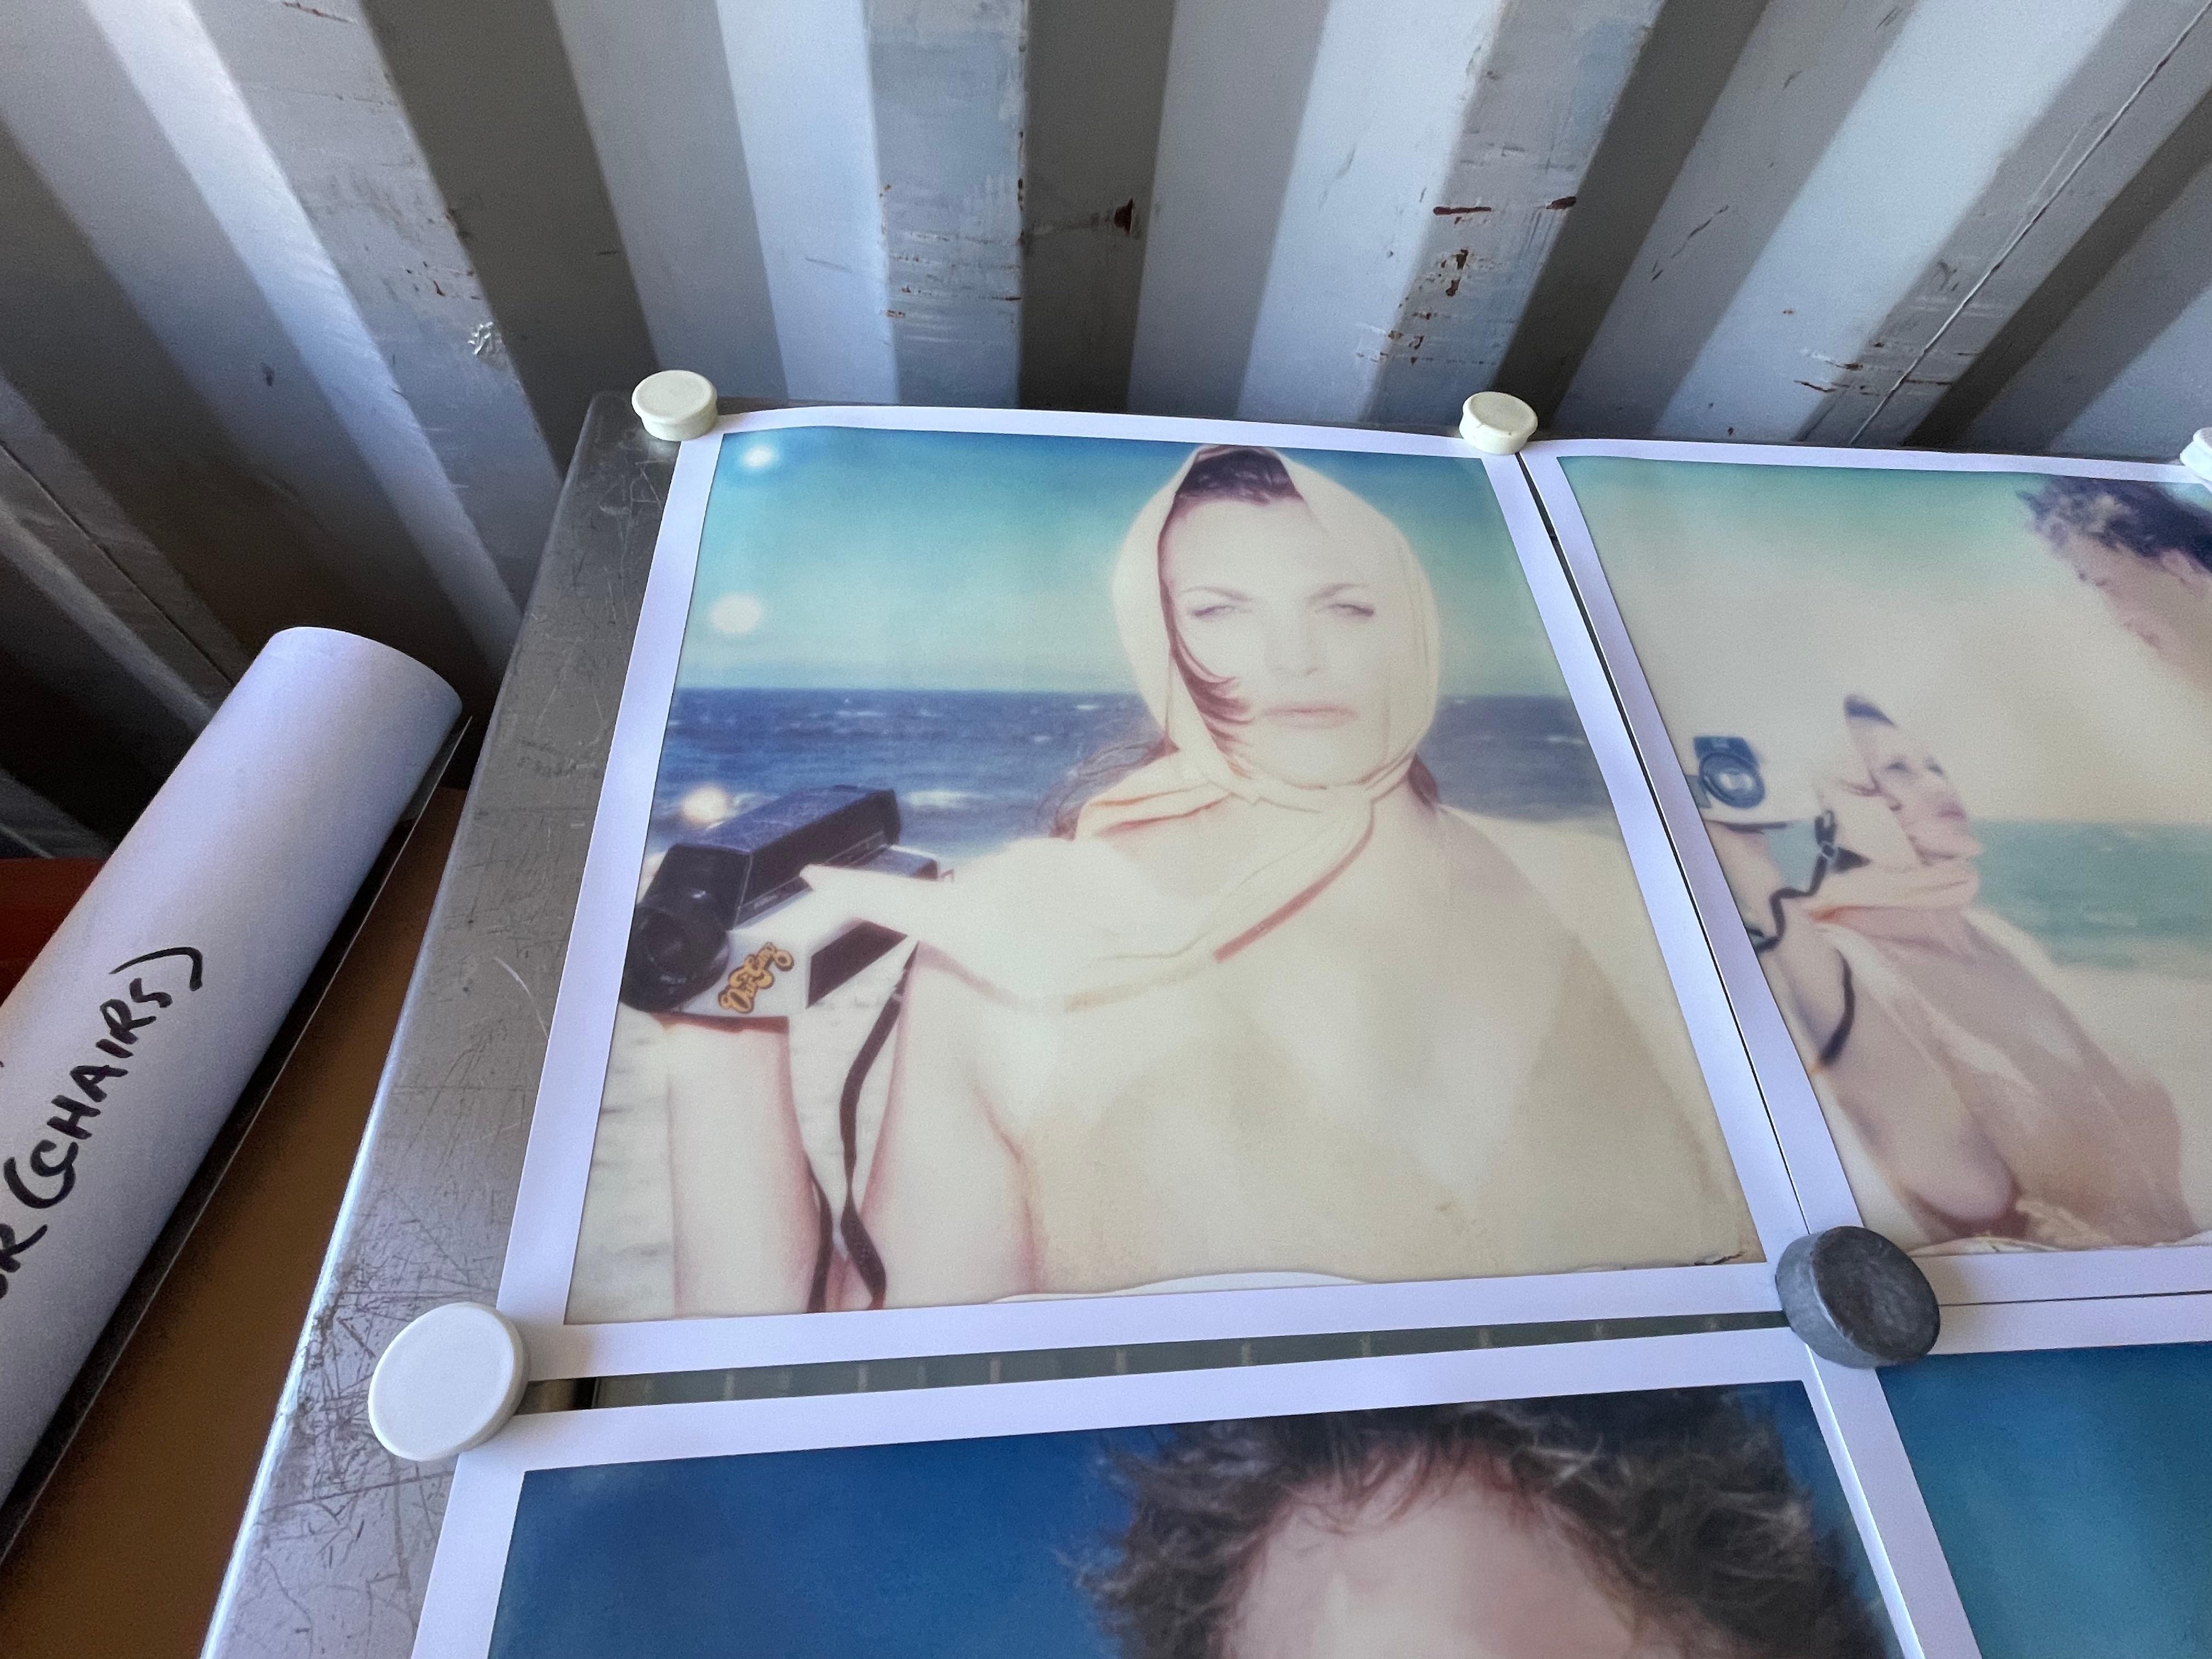 Die Diva und der Junge (Beachshoot) - 2005

Auflage: 10 Exemplare plus 2 Probedrucke. 
48x46cm pro Stück, installiert 155x151cm. 
9 archivierte C-Prints, basierend auf den 9 Polaroids. 
Label für Zertifikat und Unterschrift, 
Künstlerin Inventar #